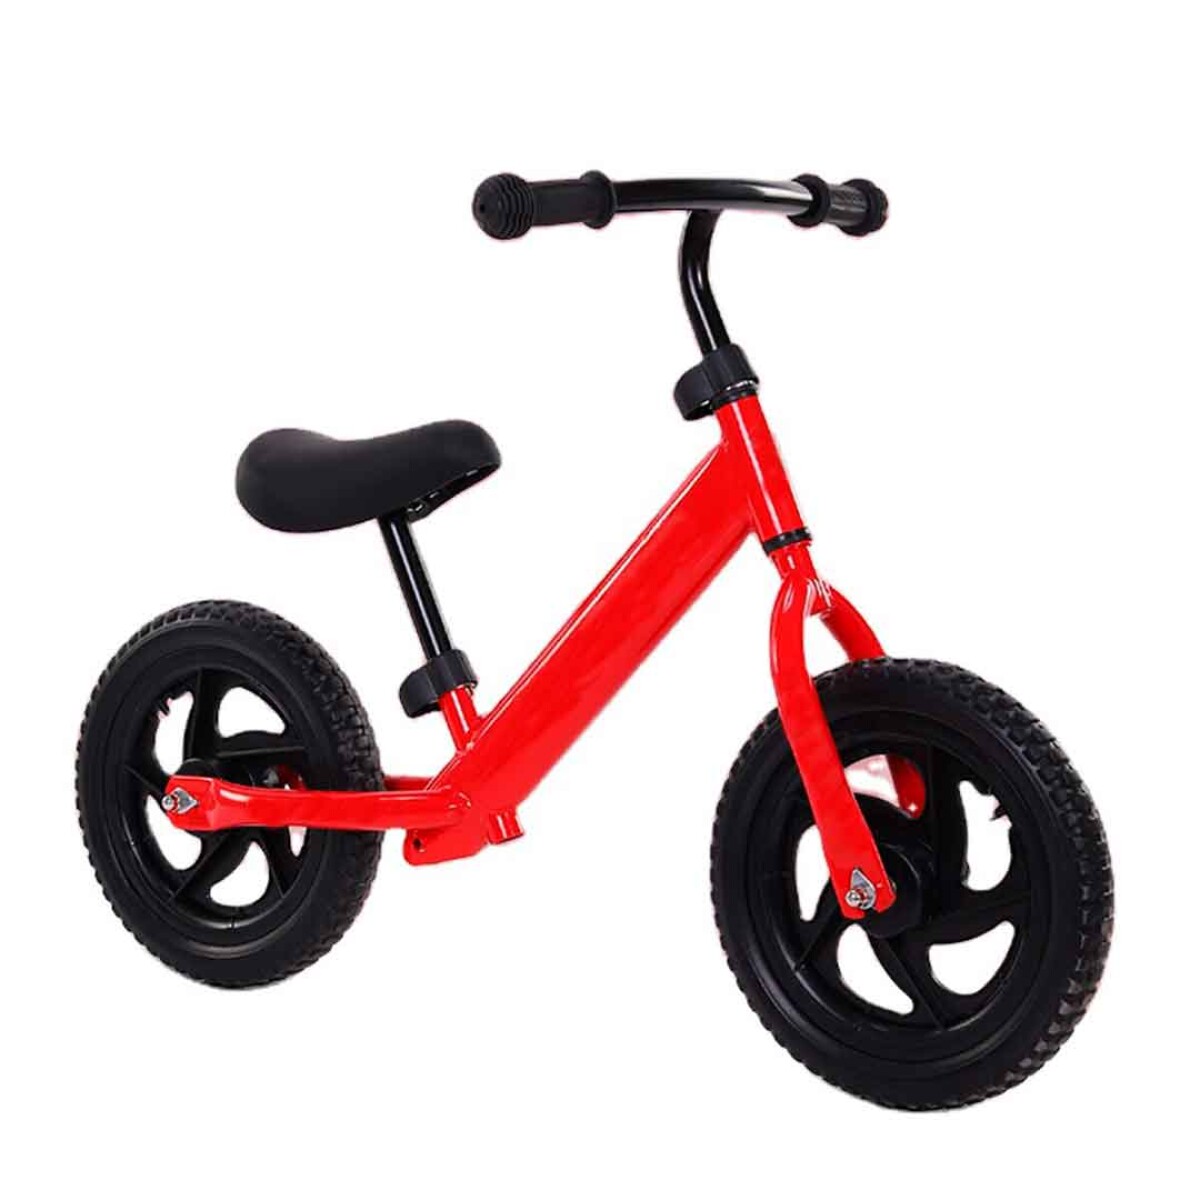 Bicicleta infantil chivita sin pedal resistente color - ROJO 